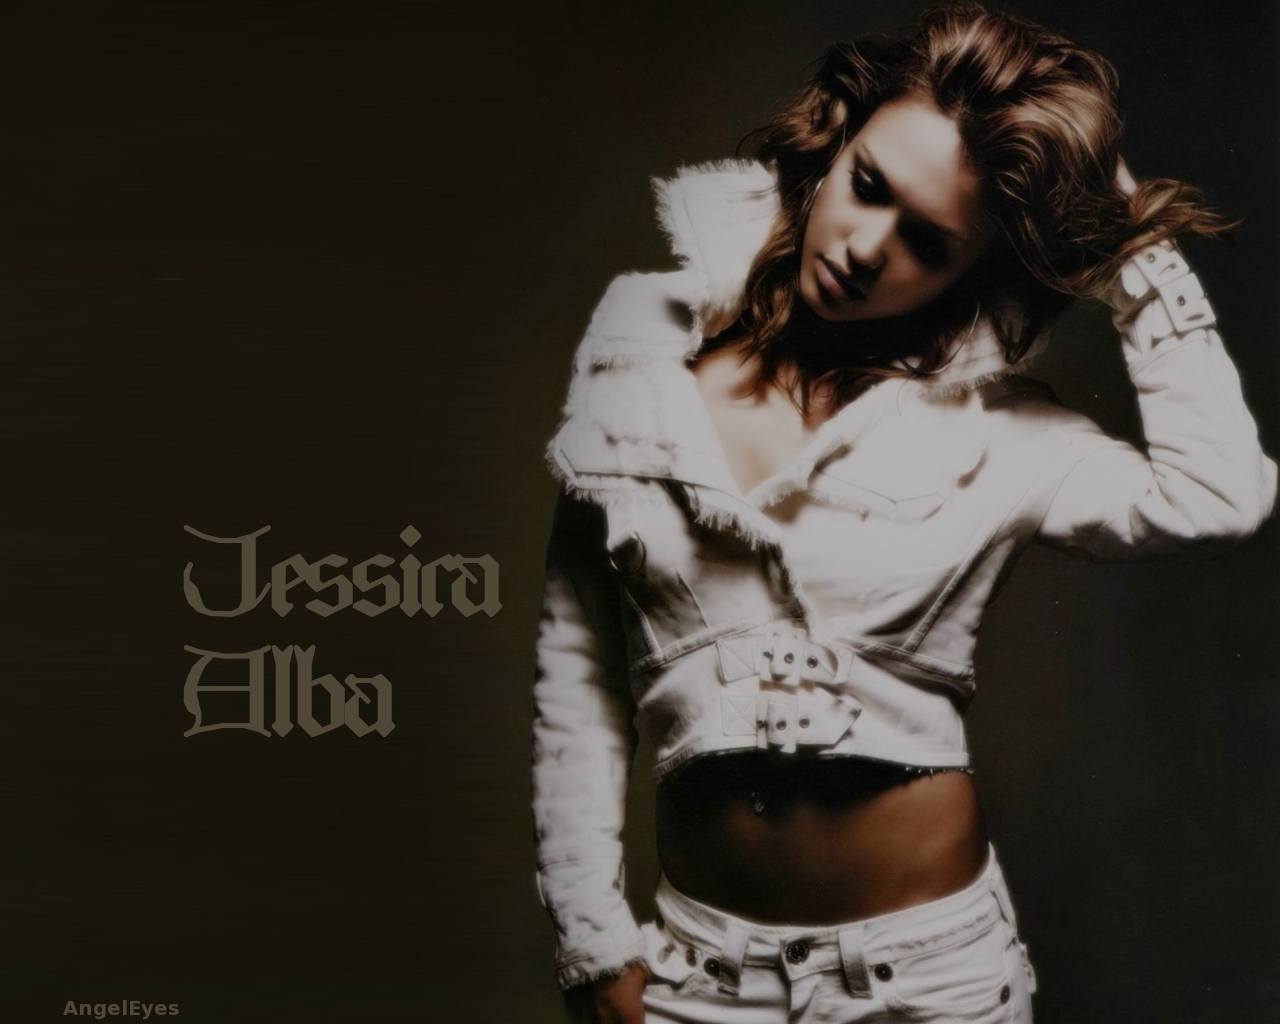 Jessica alba 151